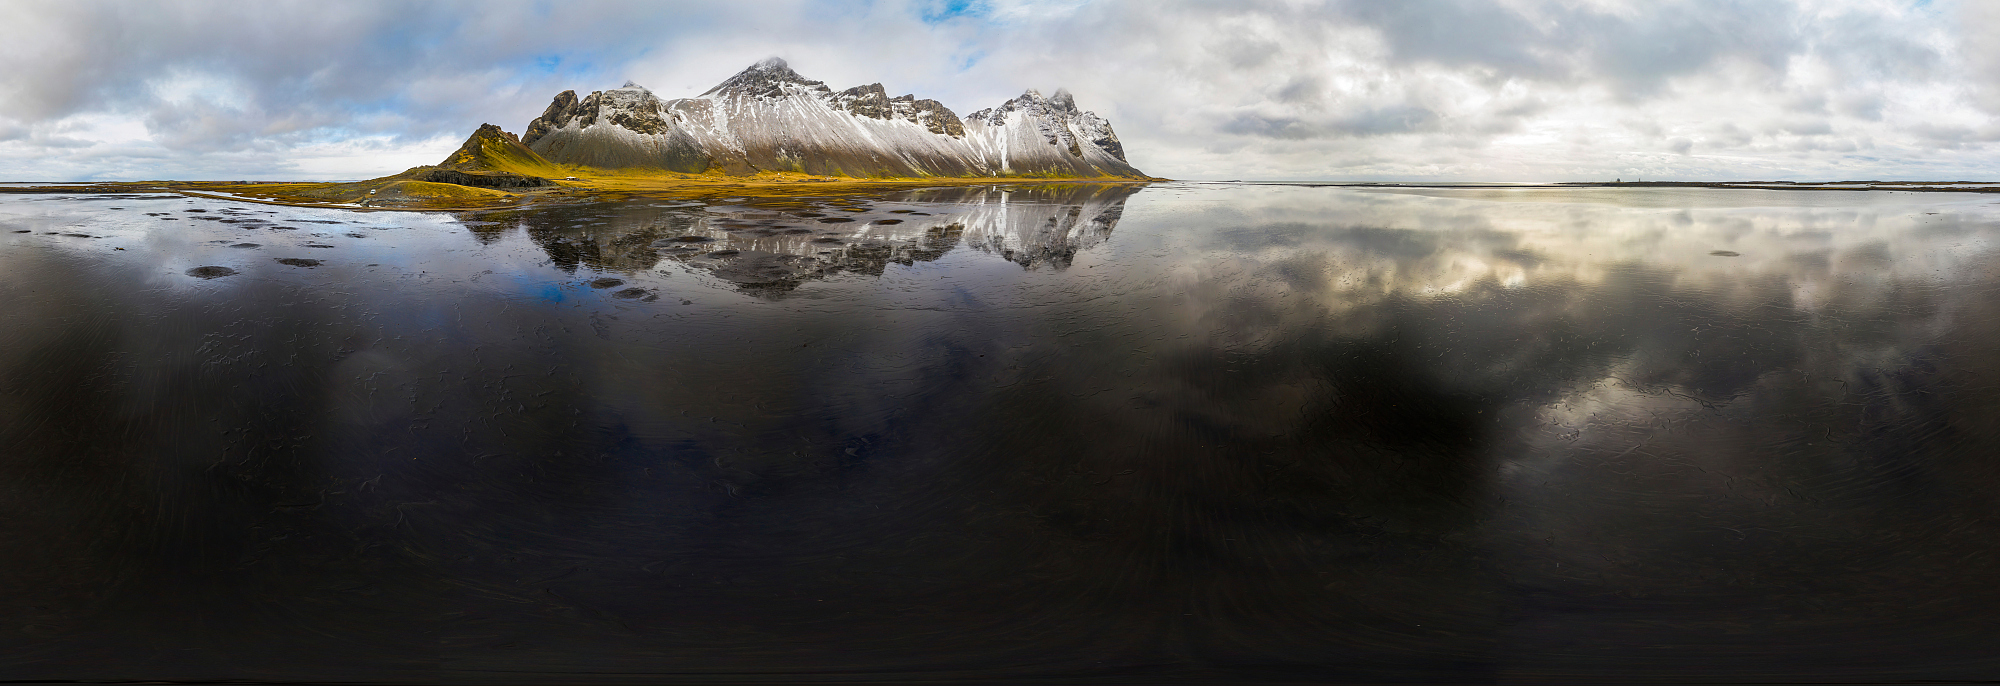 维斯特拉霍恩山和斯托克尼斯海滩的360°空中全景图。冰岛图片下载